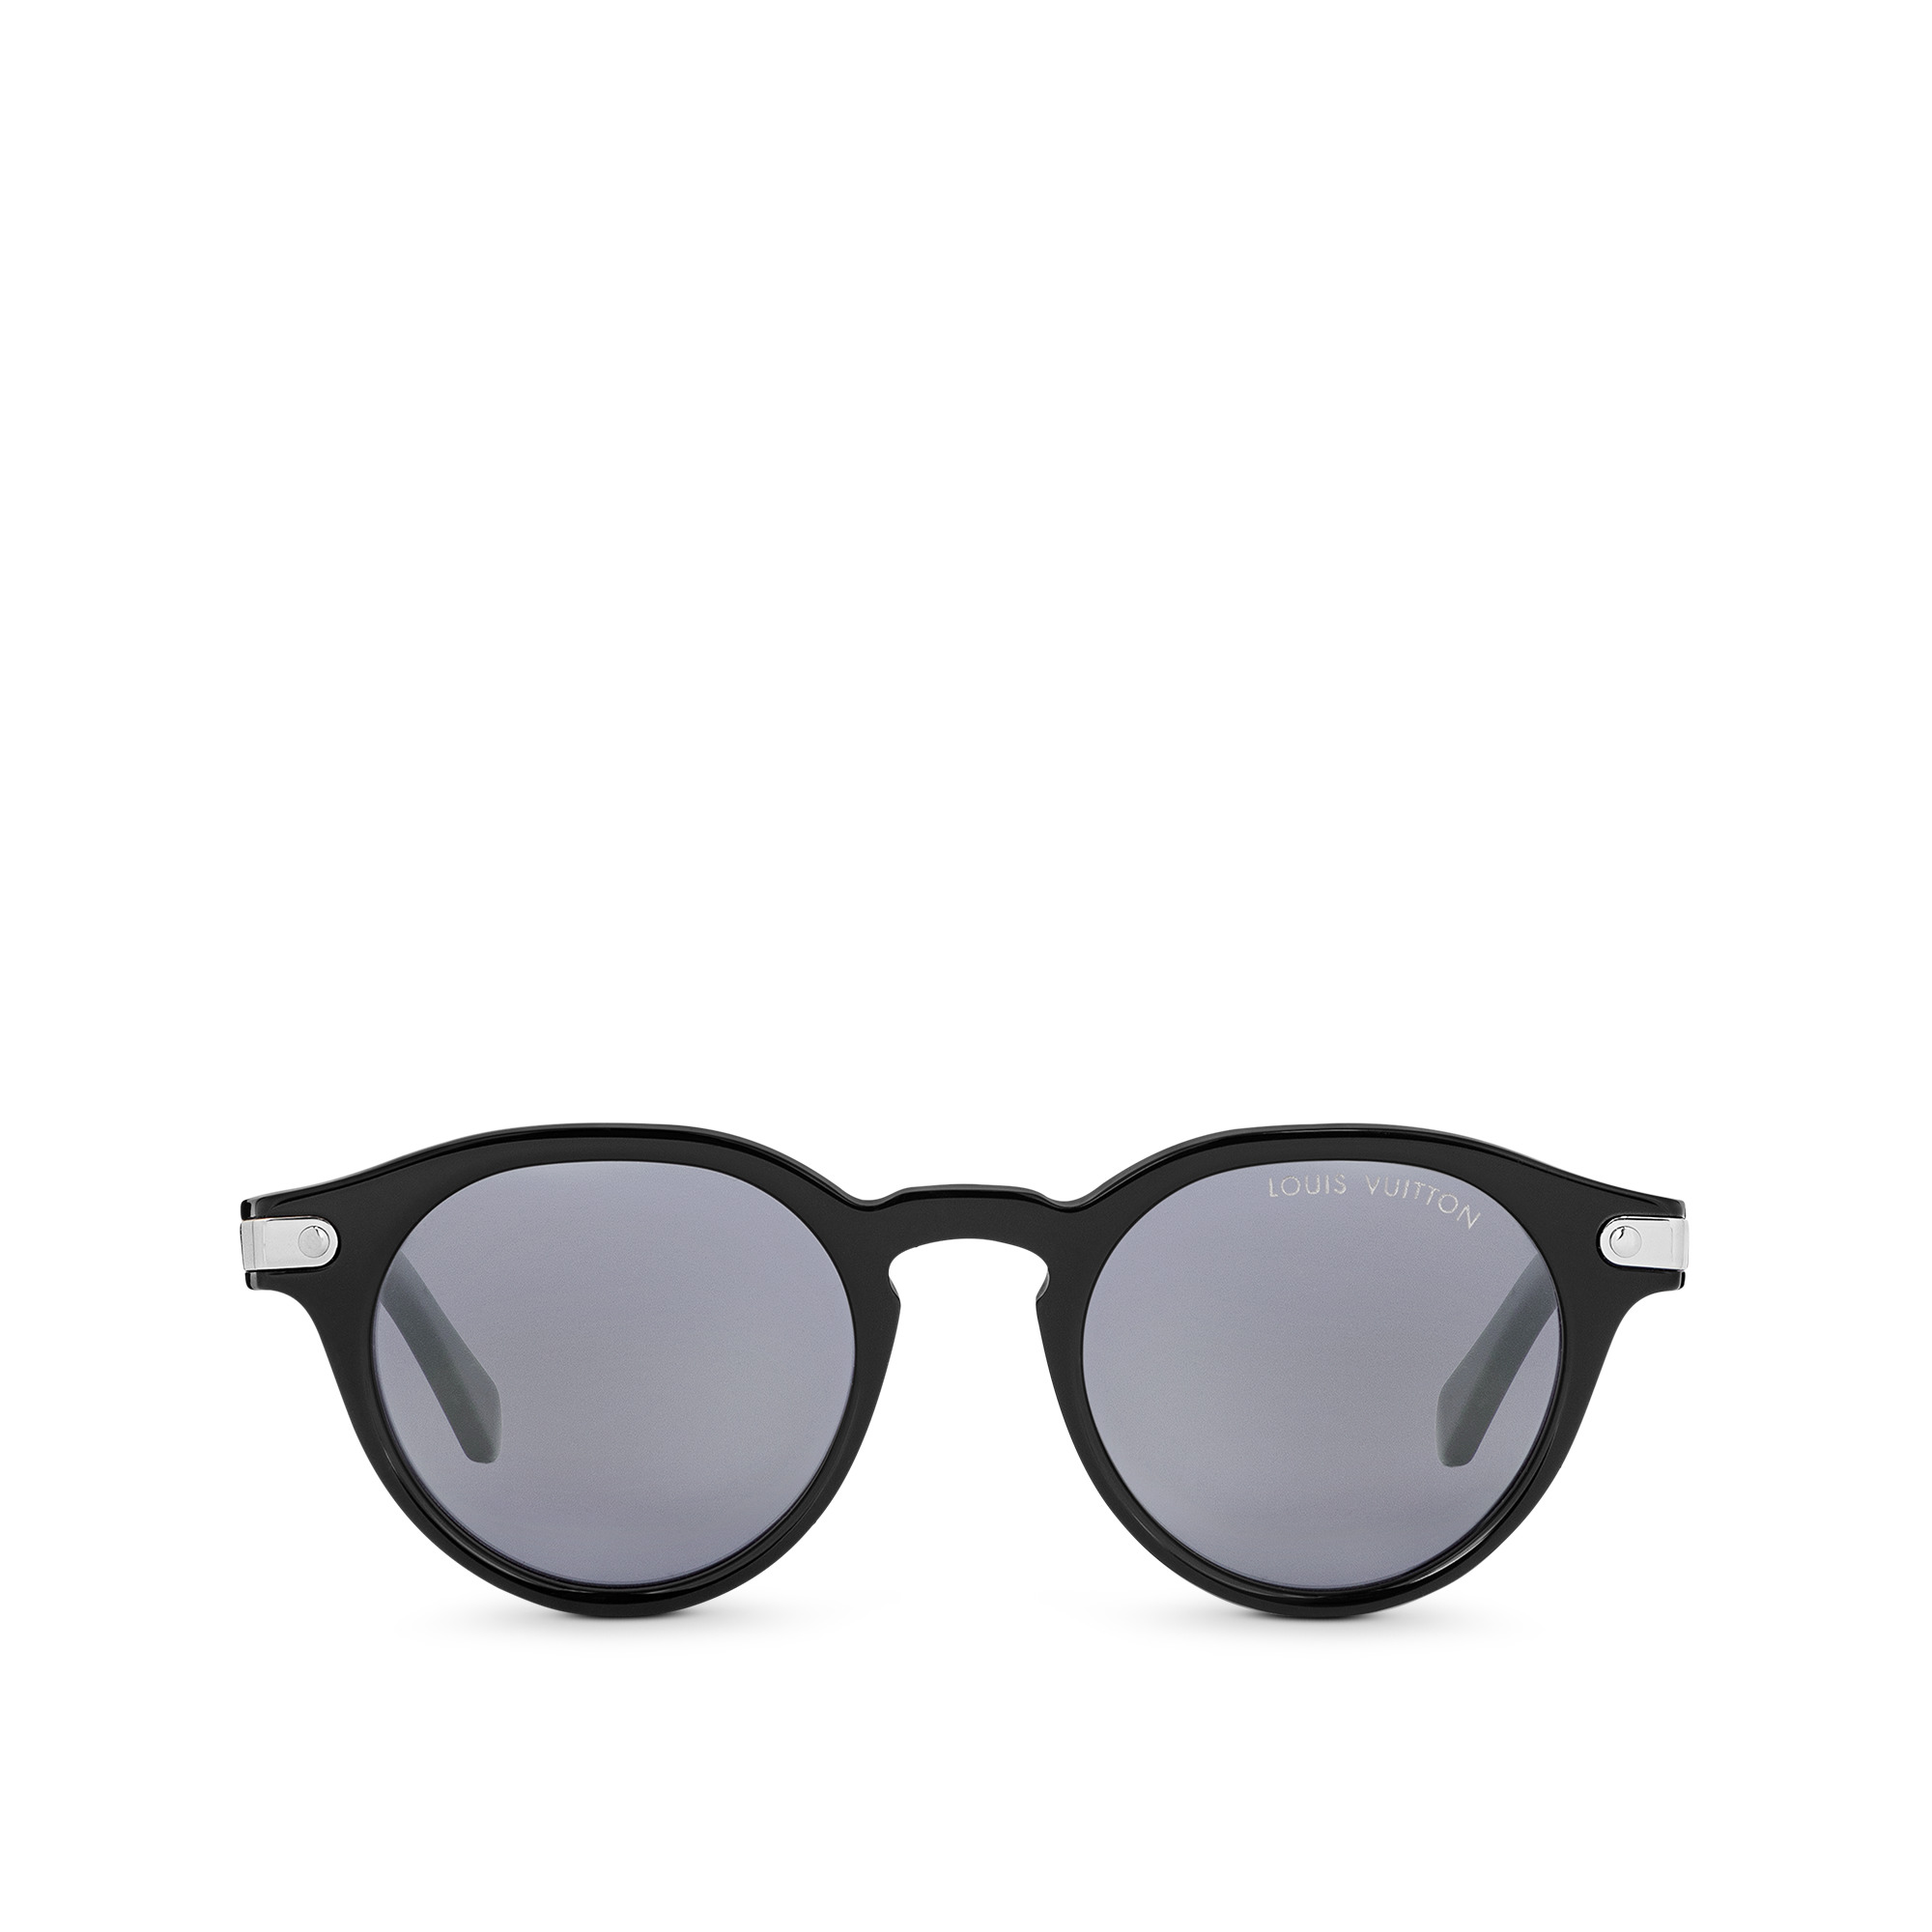 LV Signature Round Sunglasses - Size S - 4